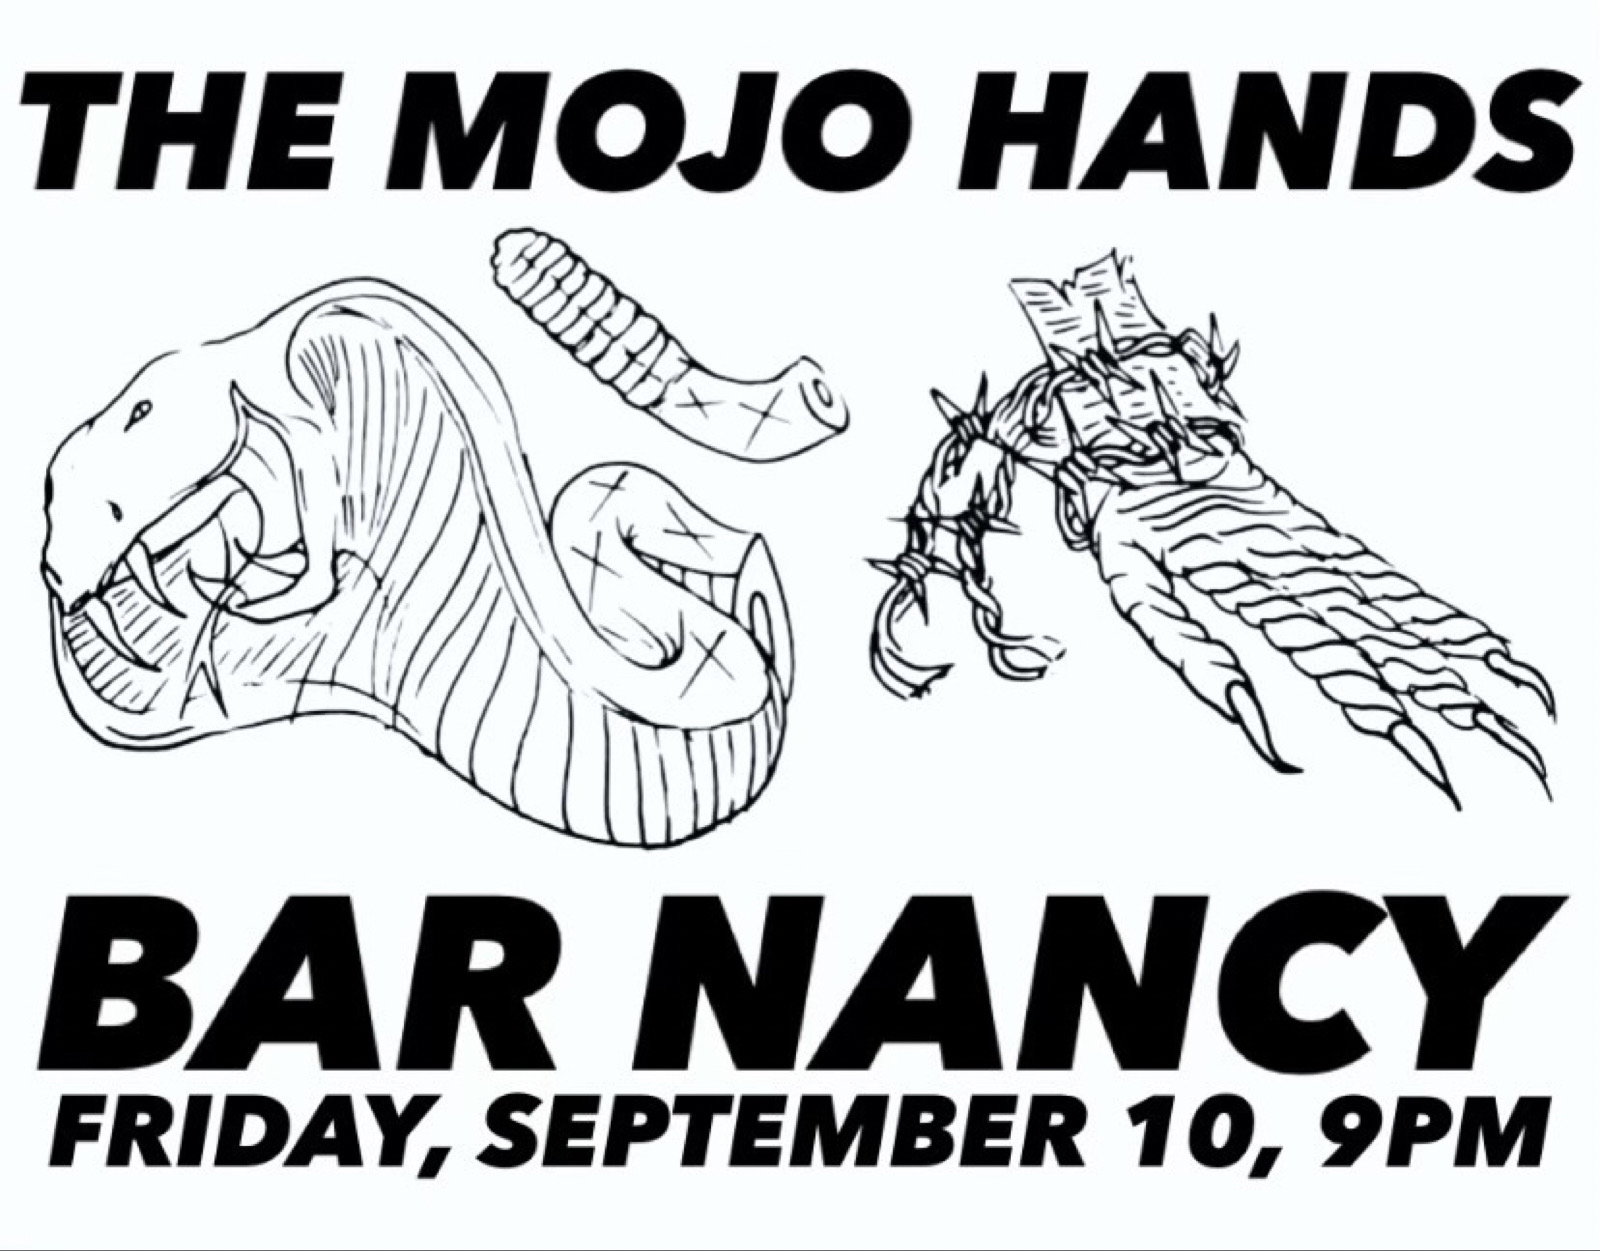 The Mojo Hands at Bar Nancy - Friday Sep 10 at 9PM